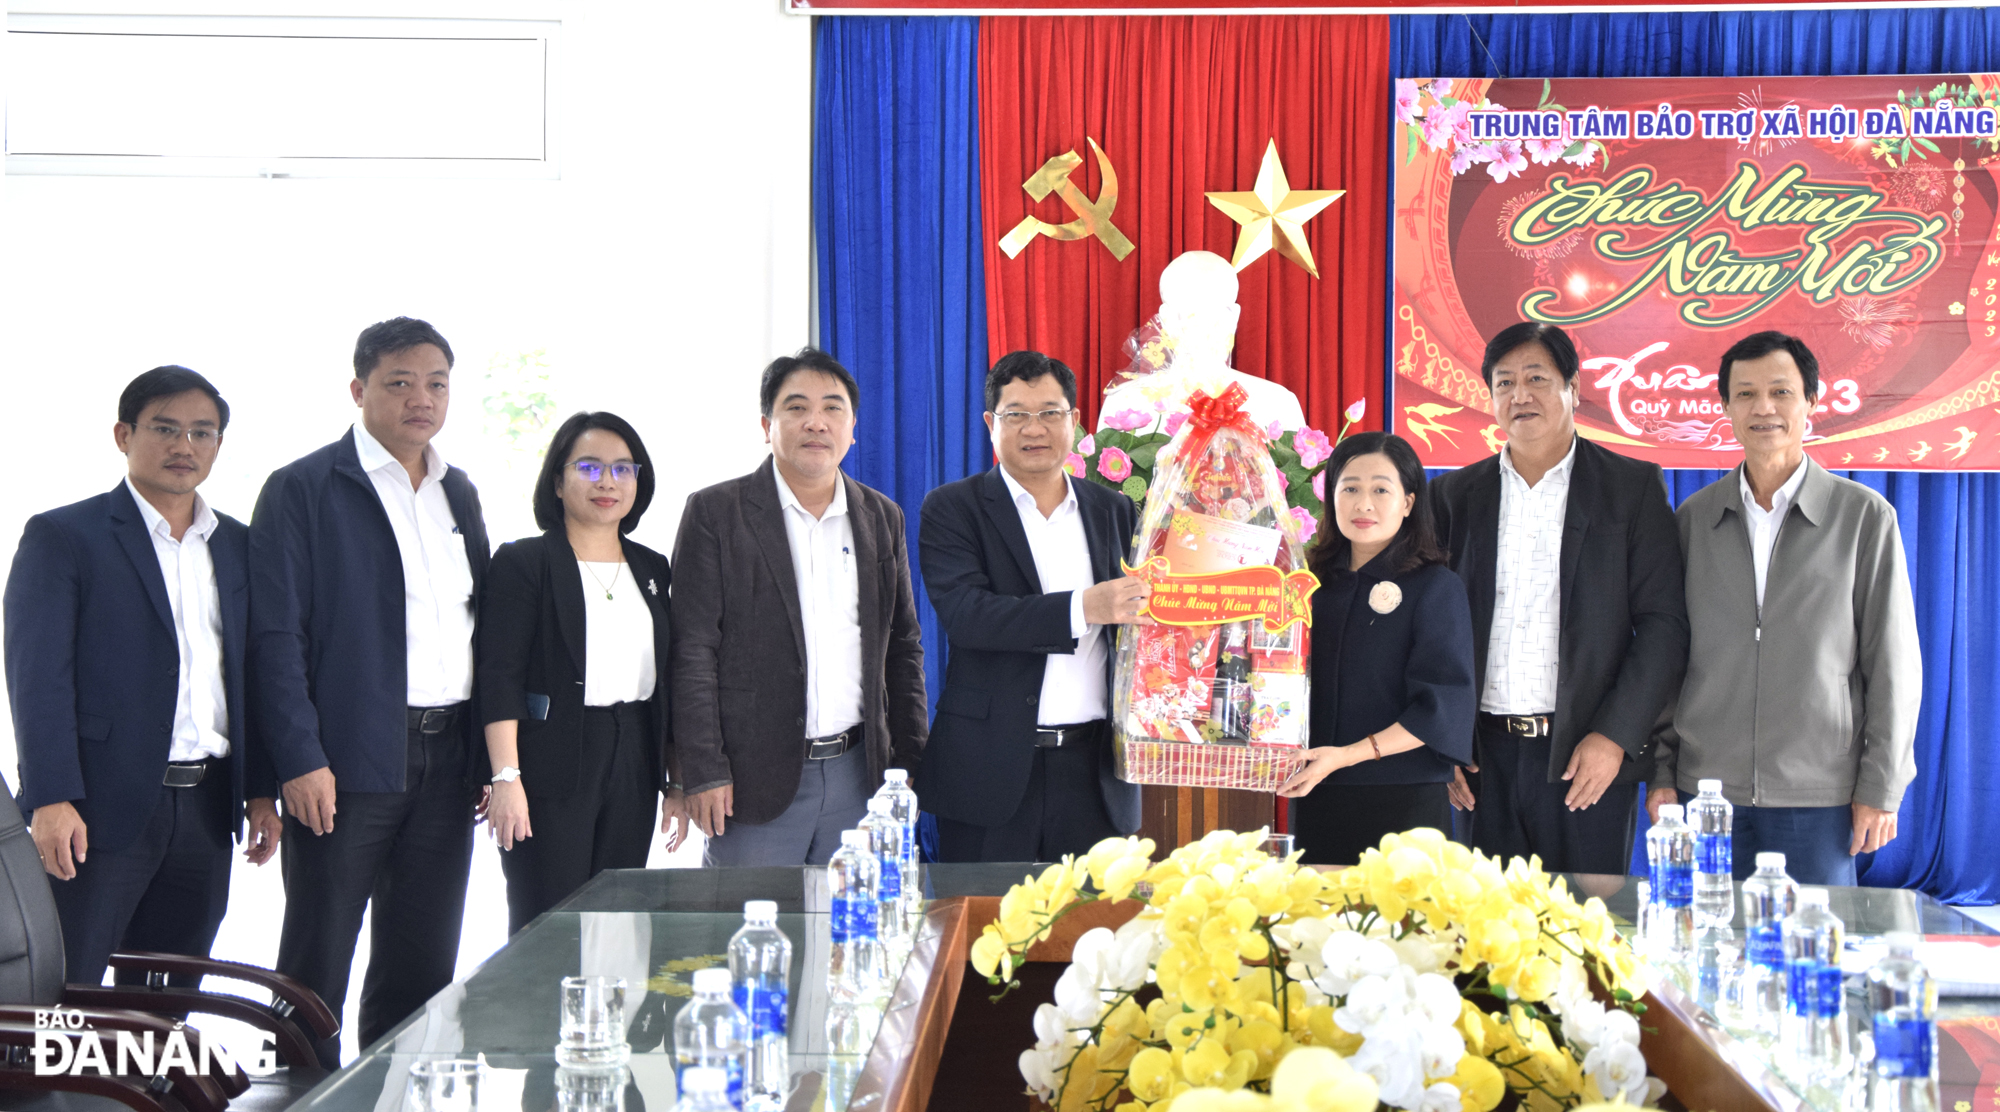 Phó Chủ tịch HĐND thành phố Trần Phước Sơn (thứ 4, phải sang) thăm, chúc Tết Trung tâm bảo trợ xã hội thành phố. Ảnh: T. HUY